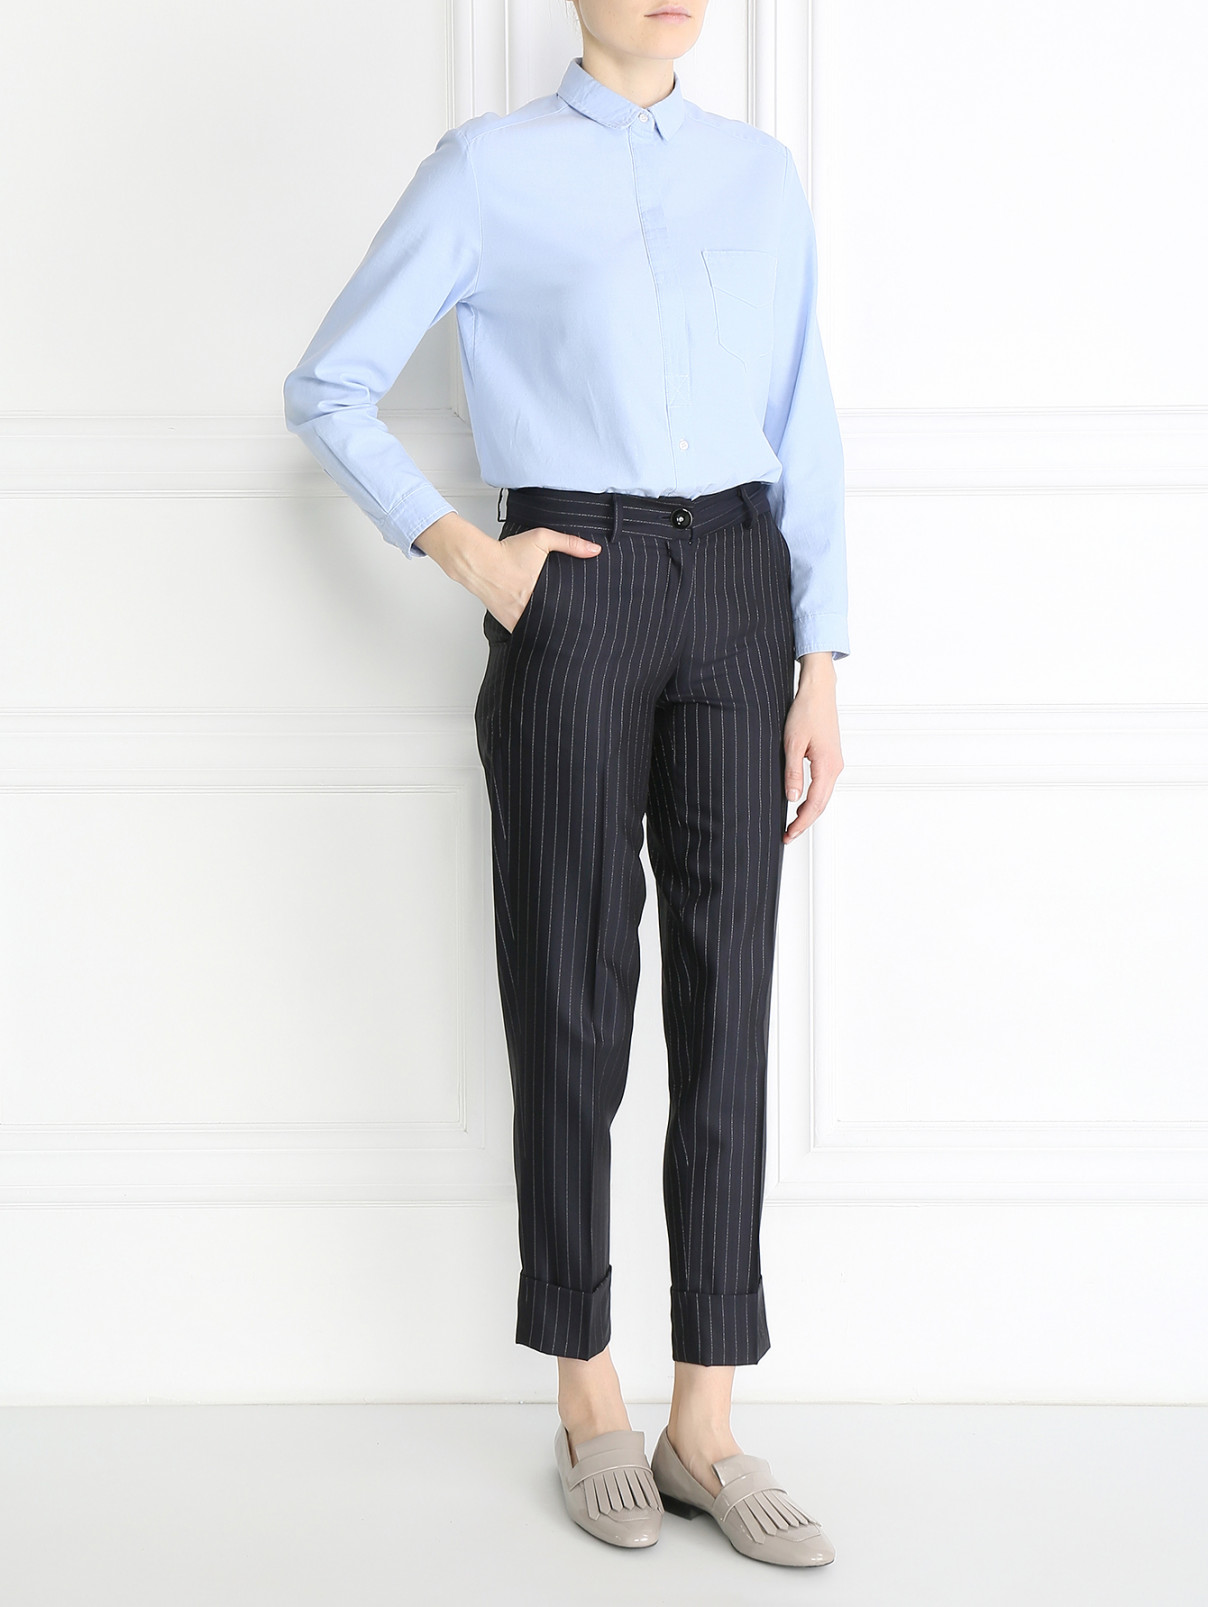 Укороченные брюки из шерсти с узором "полоска" Ma' ry' ya  –  Модель Общий вид  – Цвет:  Синий